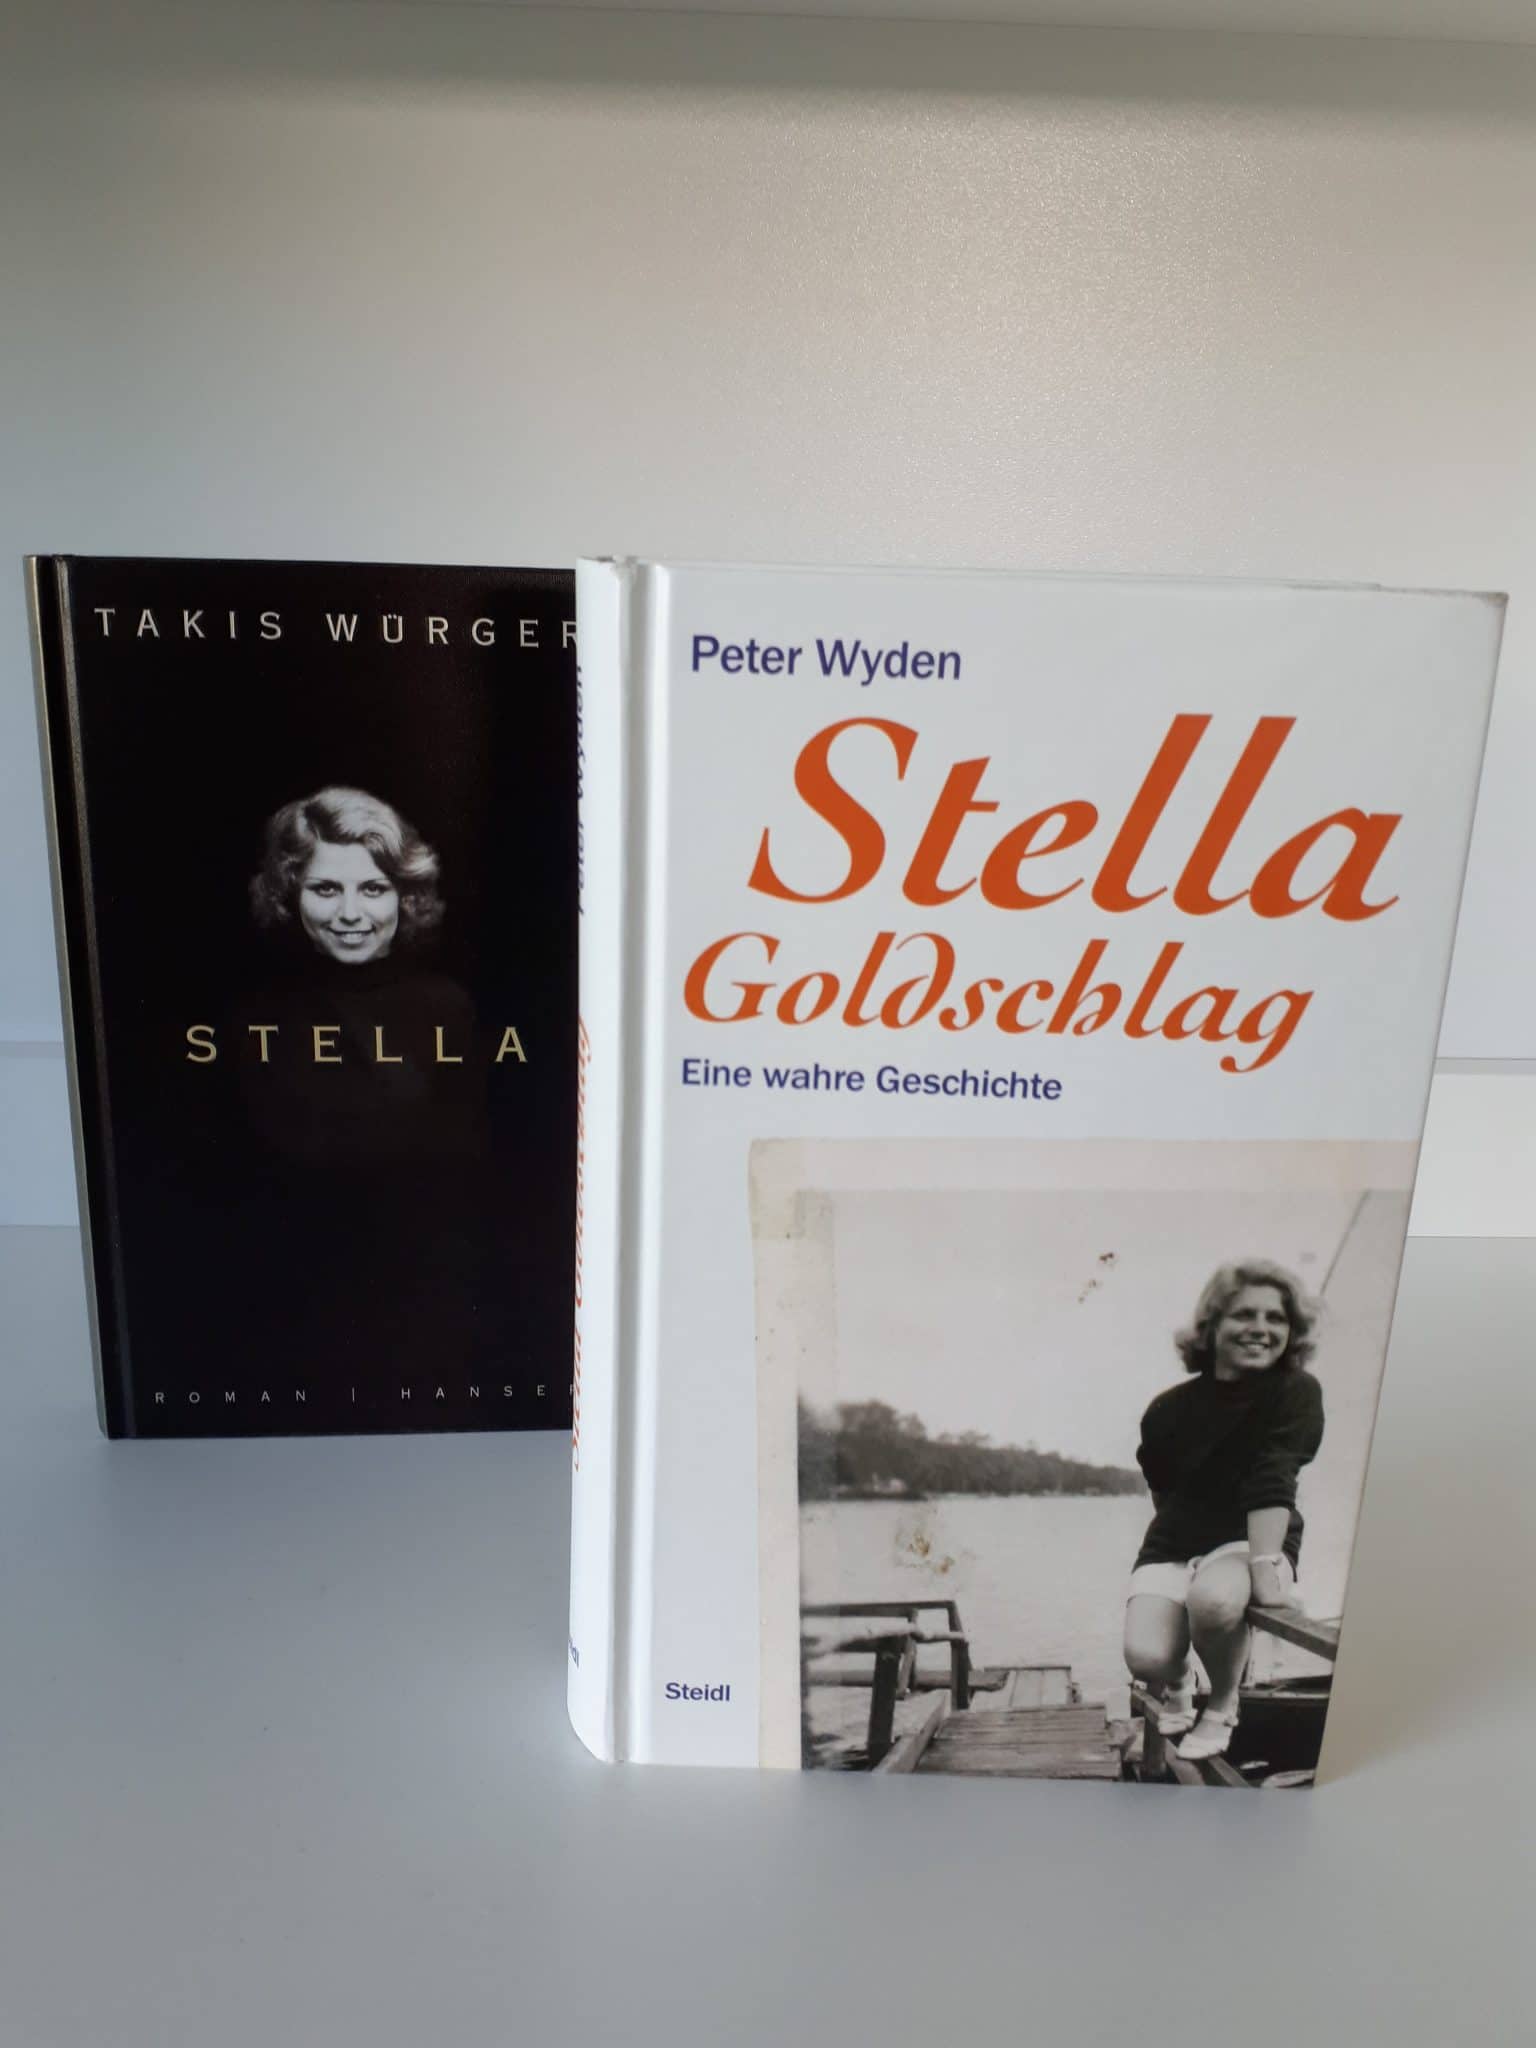 Peter Weyden  Stella Goldschlag. Eine wahre Geschichte und ein paar Gedanken zur Veröffentlichung von Takis Würgers Stella